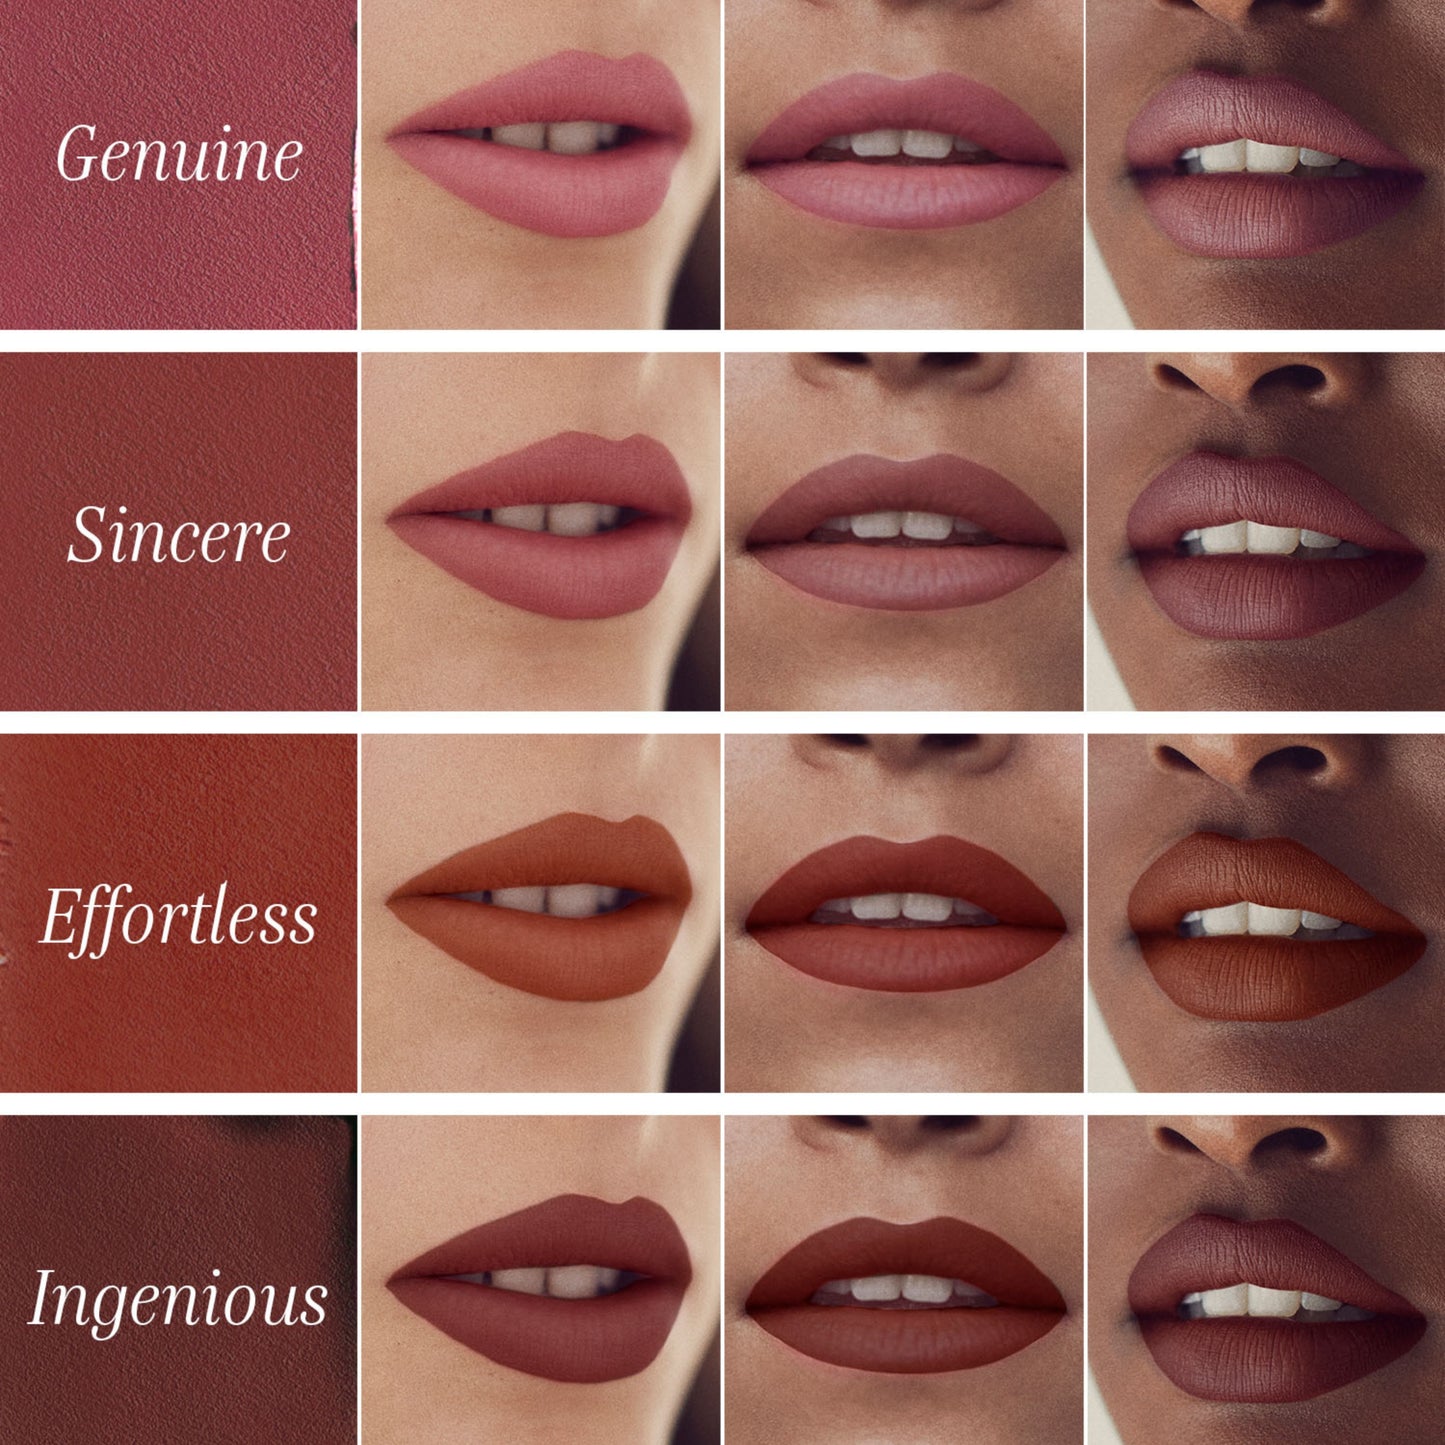 Lipstick--Sincere